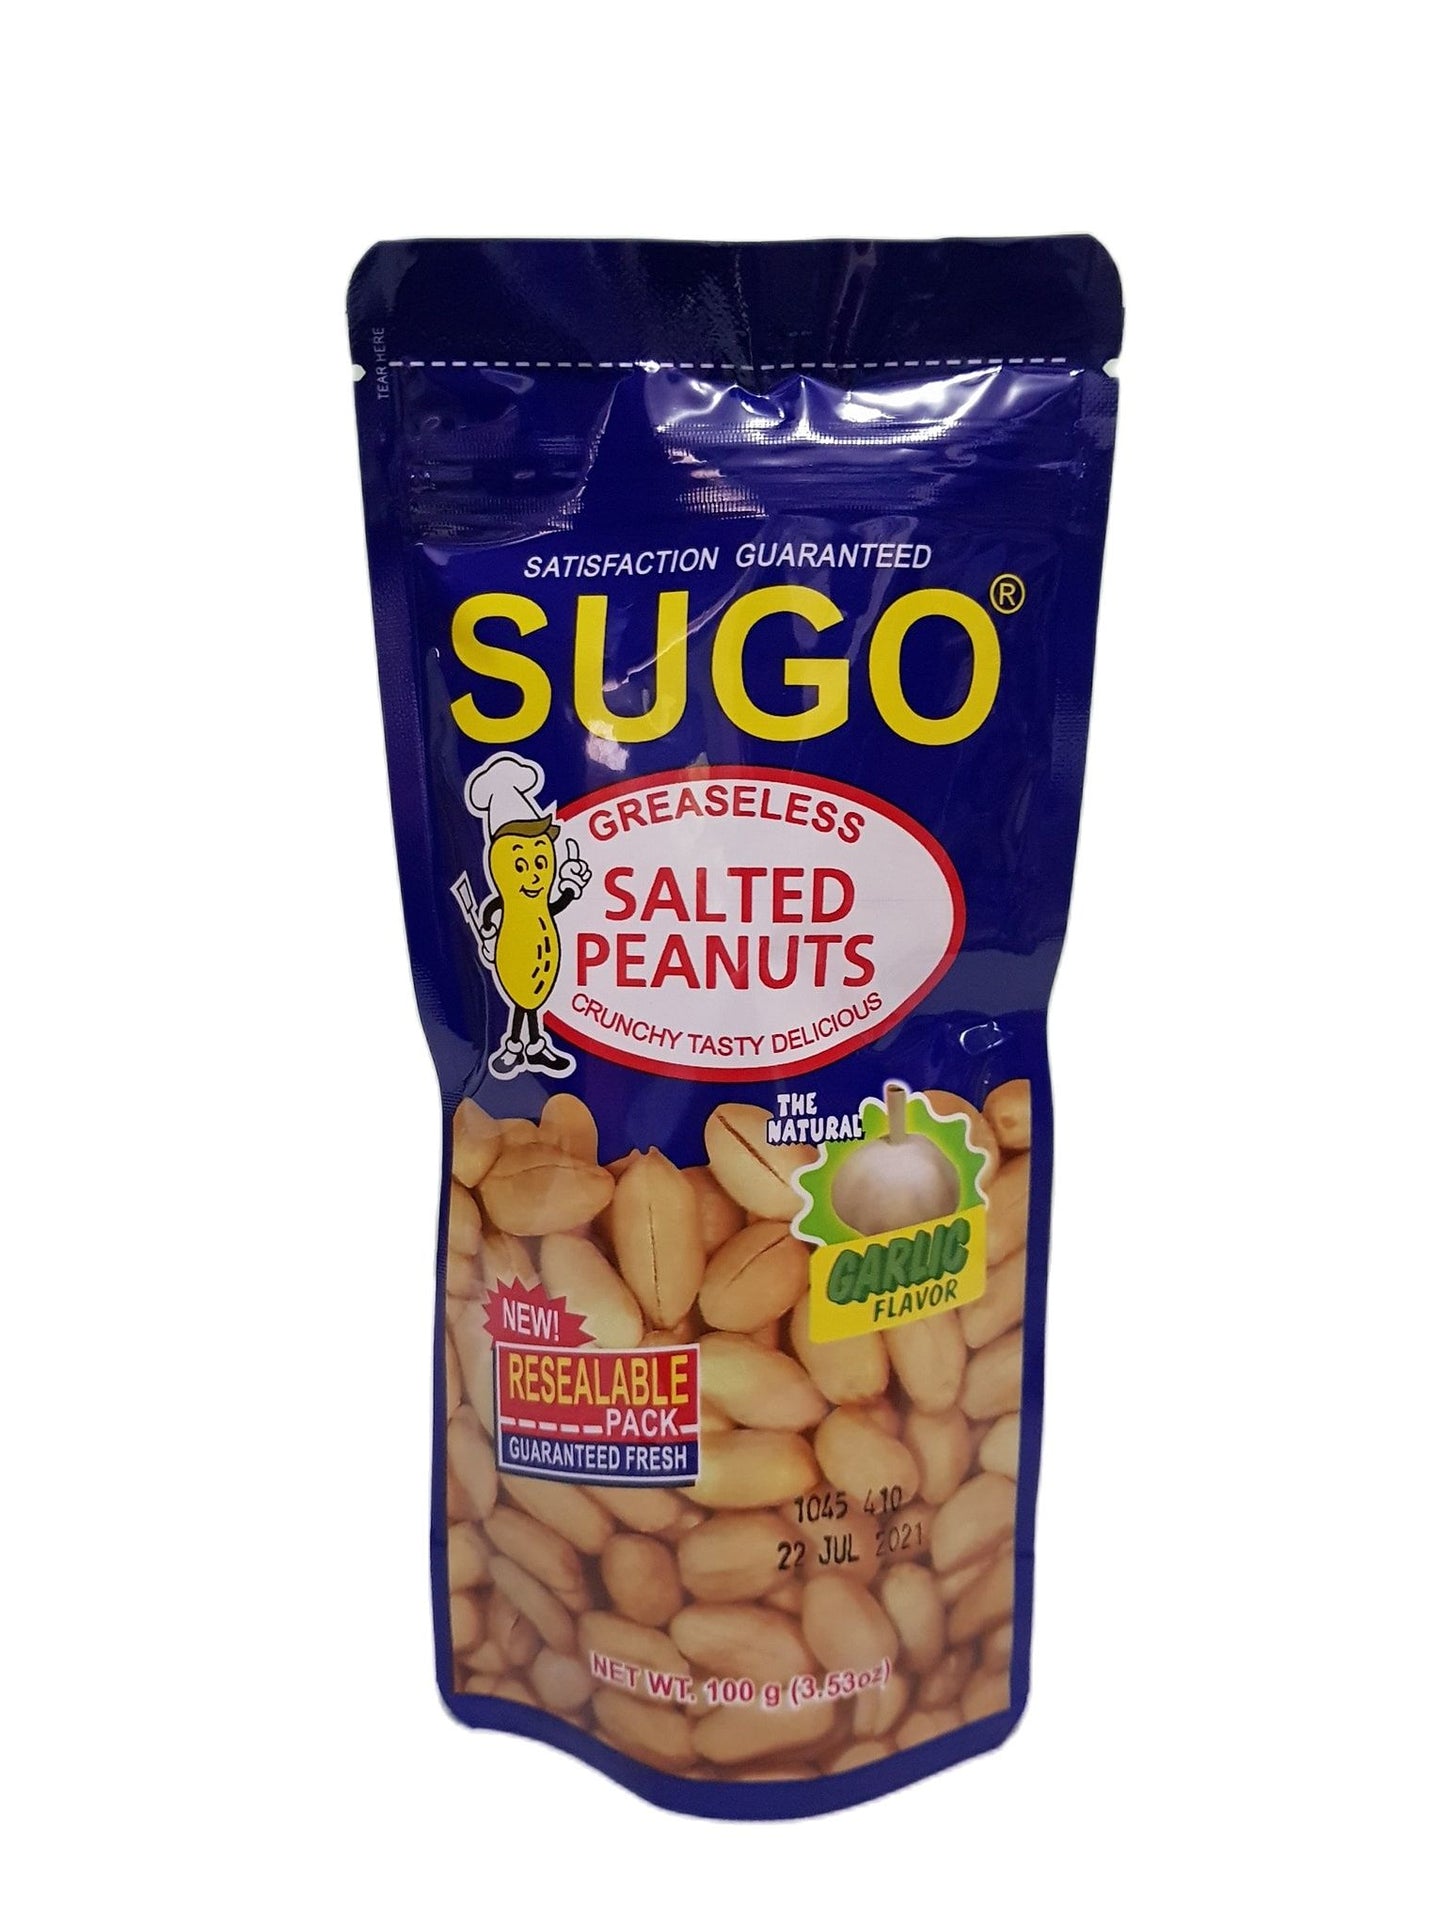 SUGO PEANUTS GREASELESS GARLIC 100G